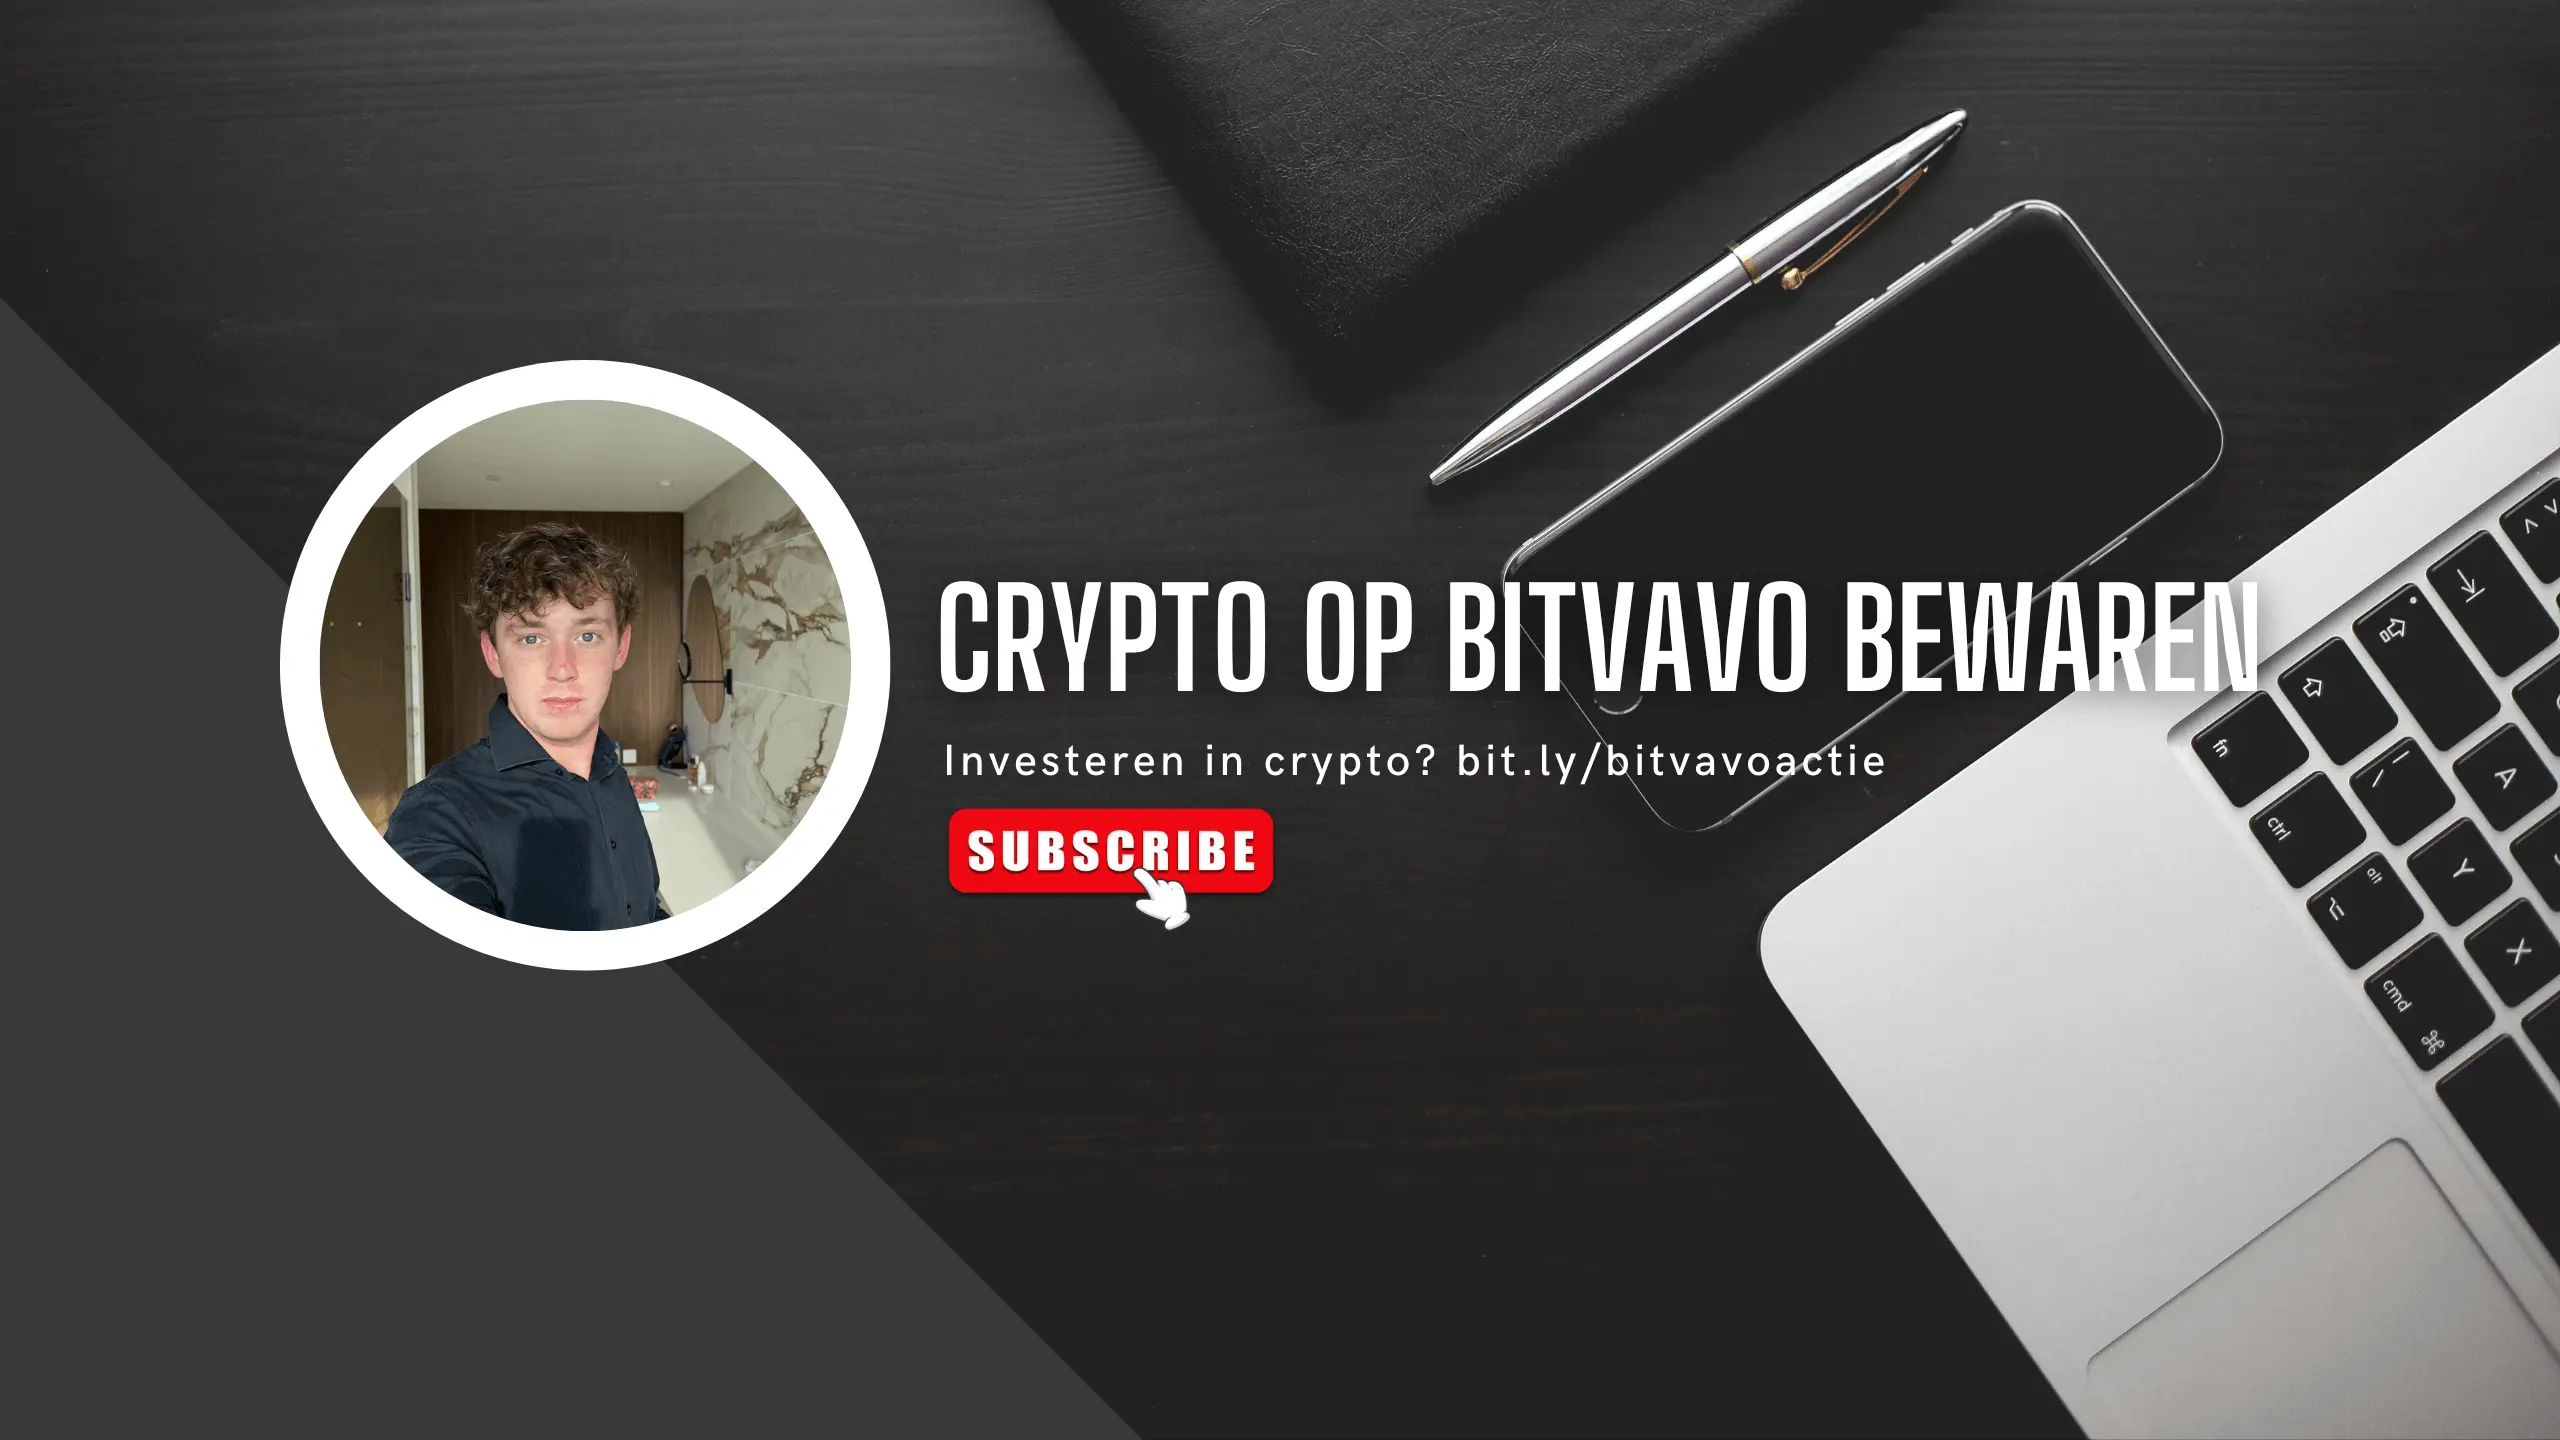 Is het veilig om crypto op Bitvavo te laten staan?